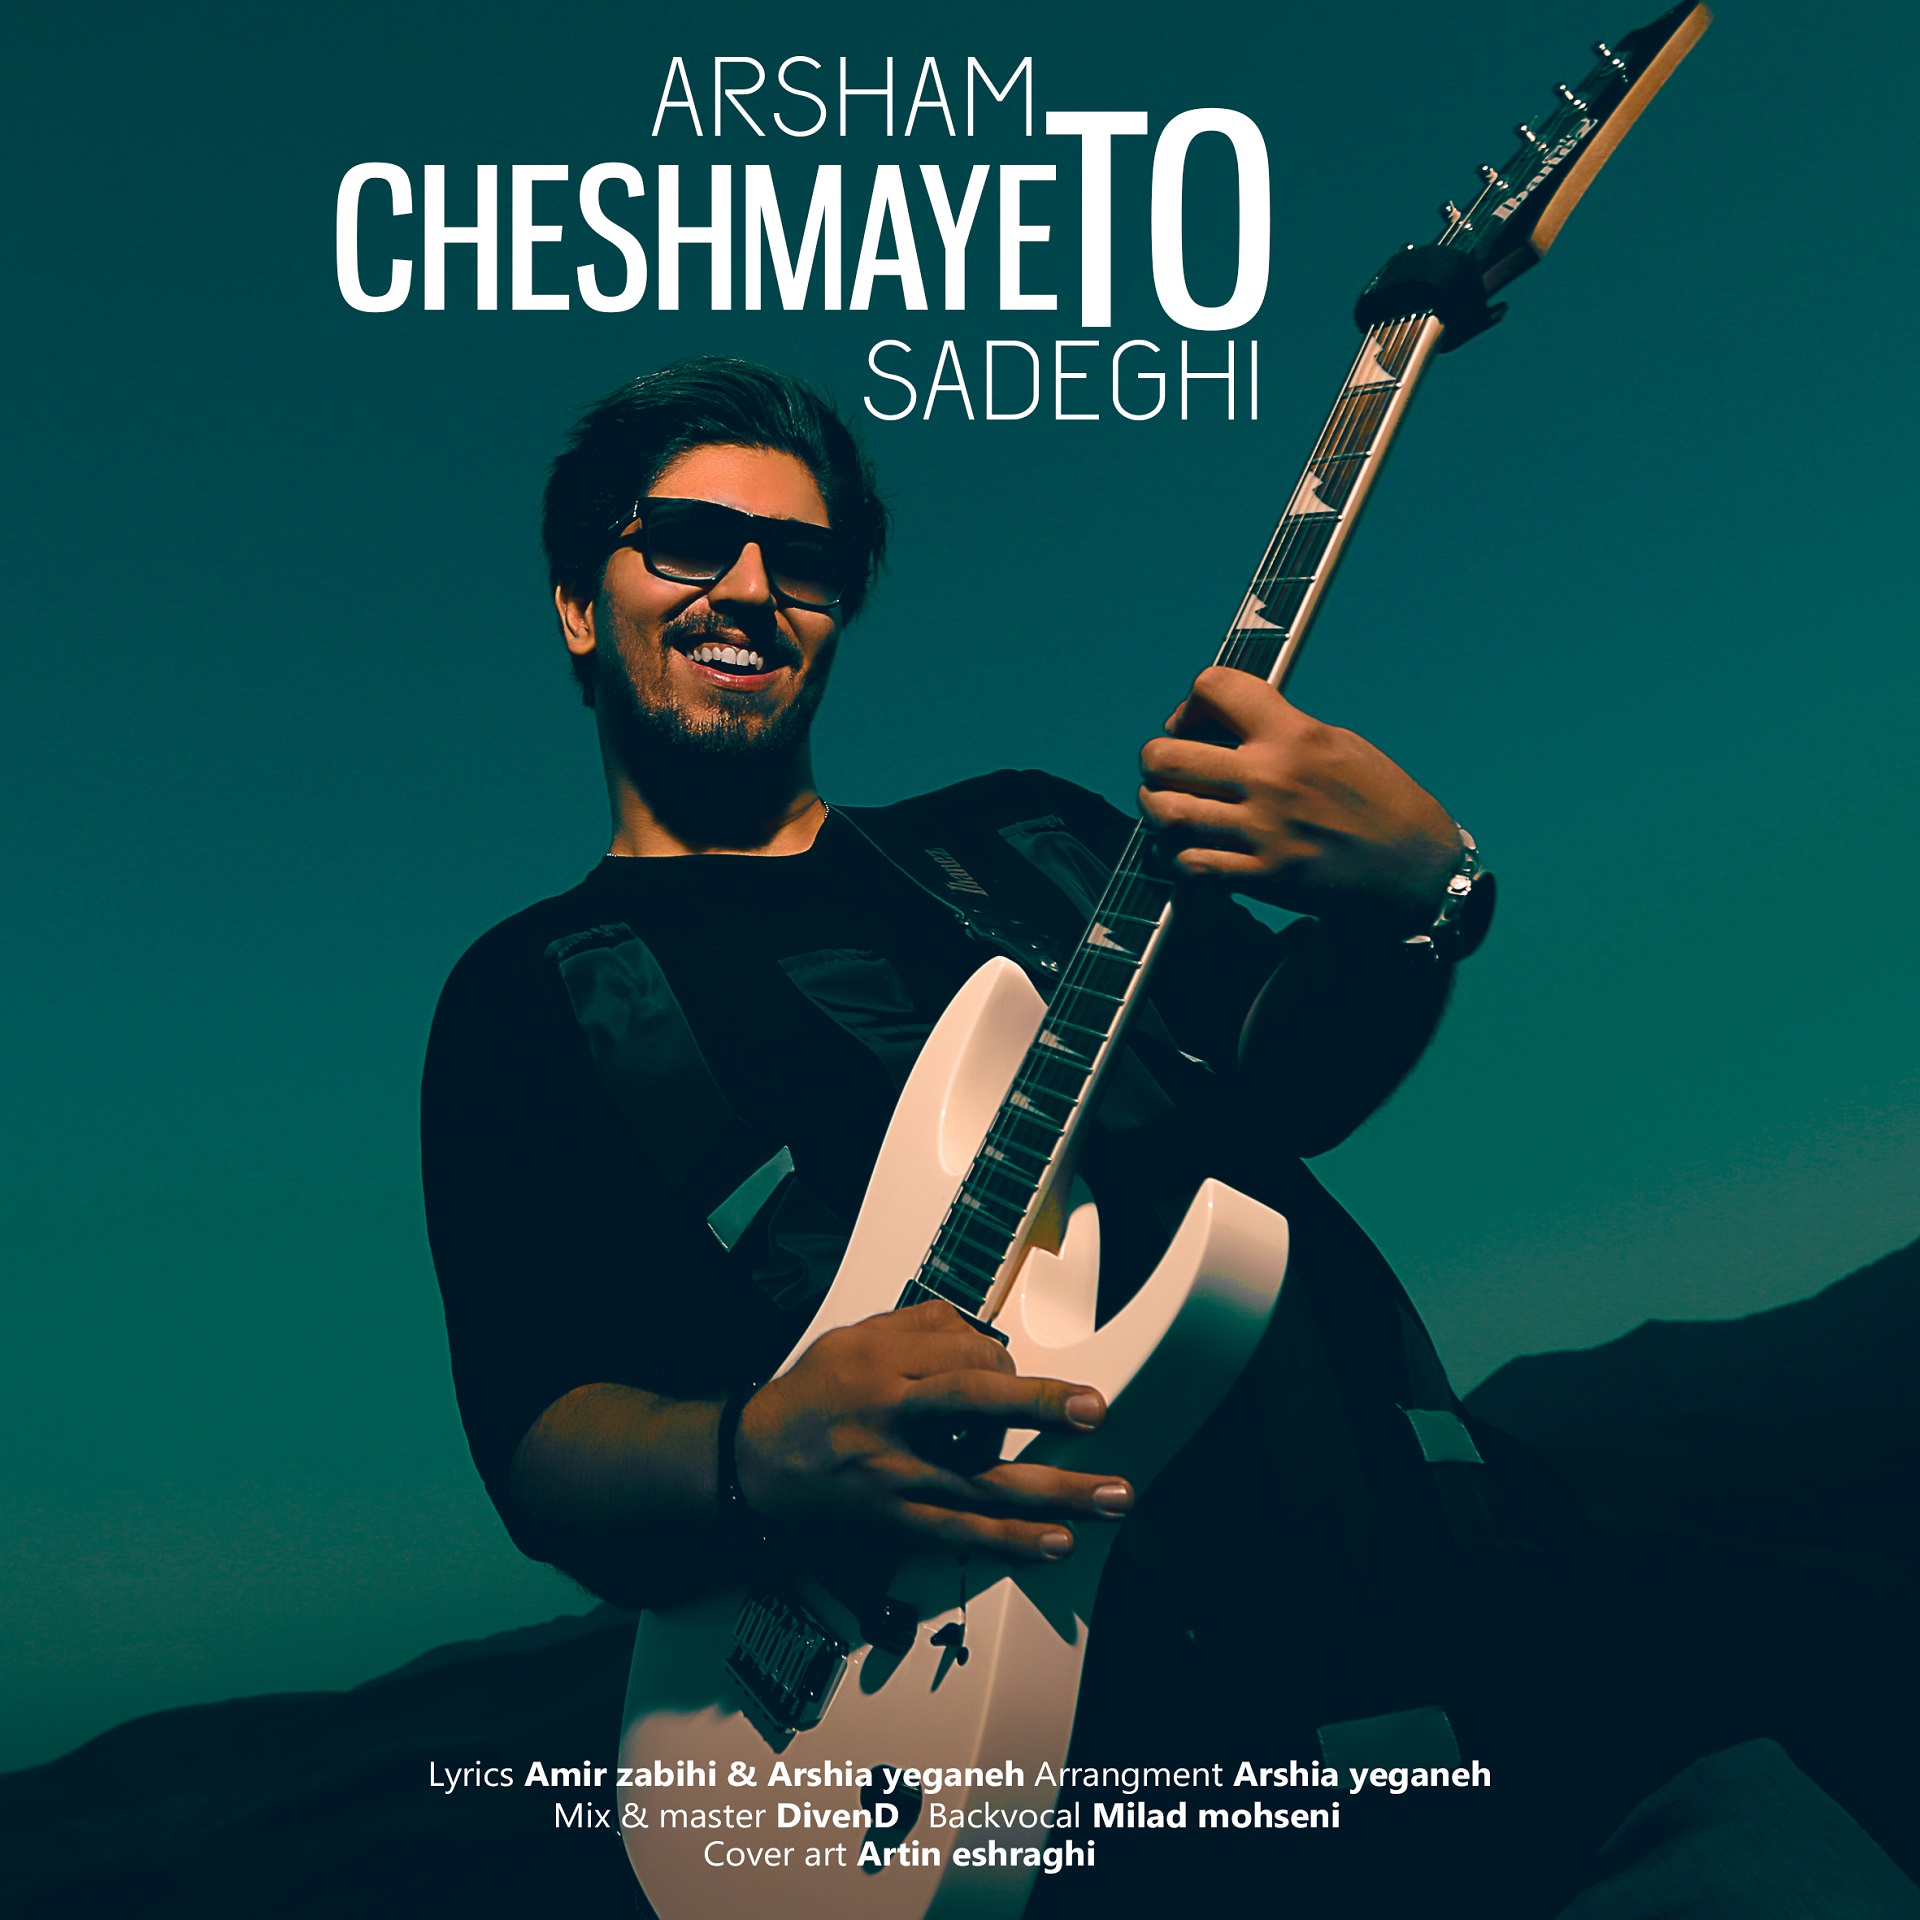  دانلود آهنگ جدید آرشام صادقیان - چشم های تو | Download New Music By Arsham Sadeghi - Cheshmaye To